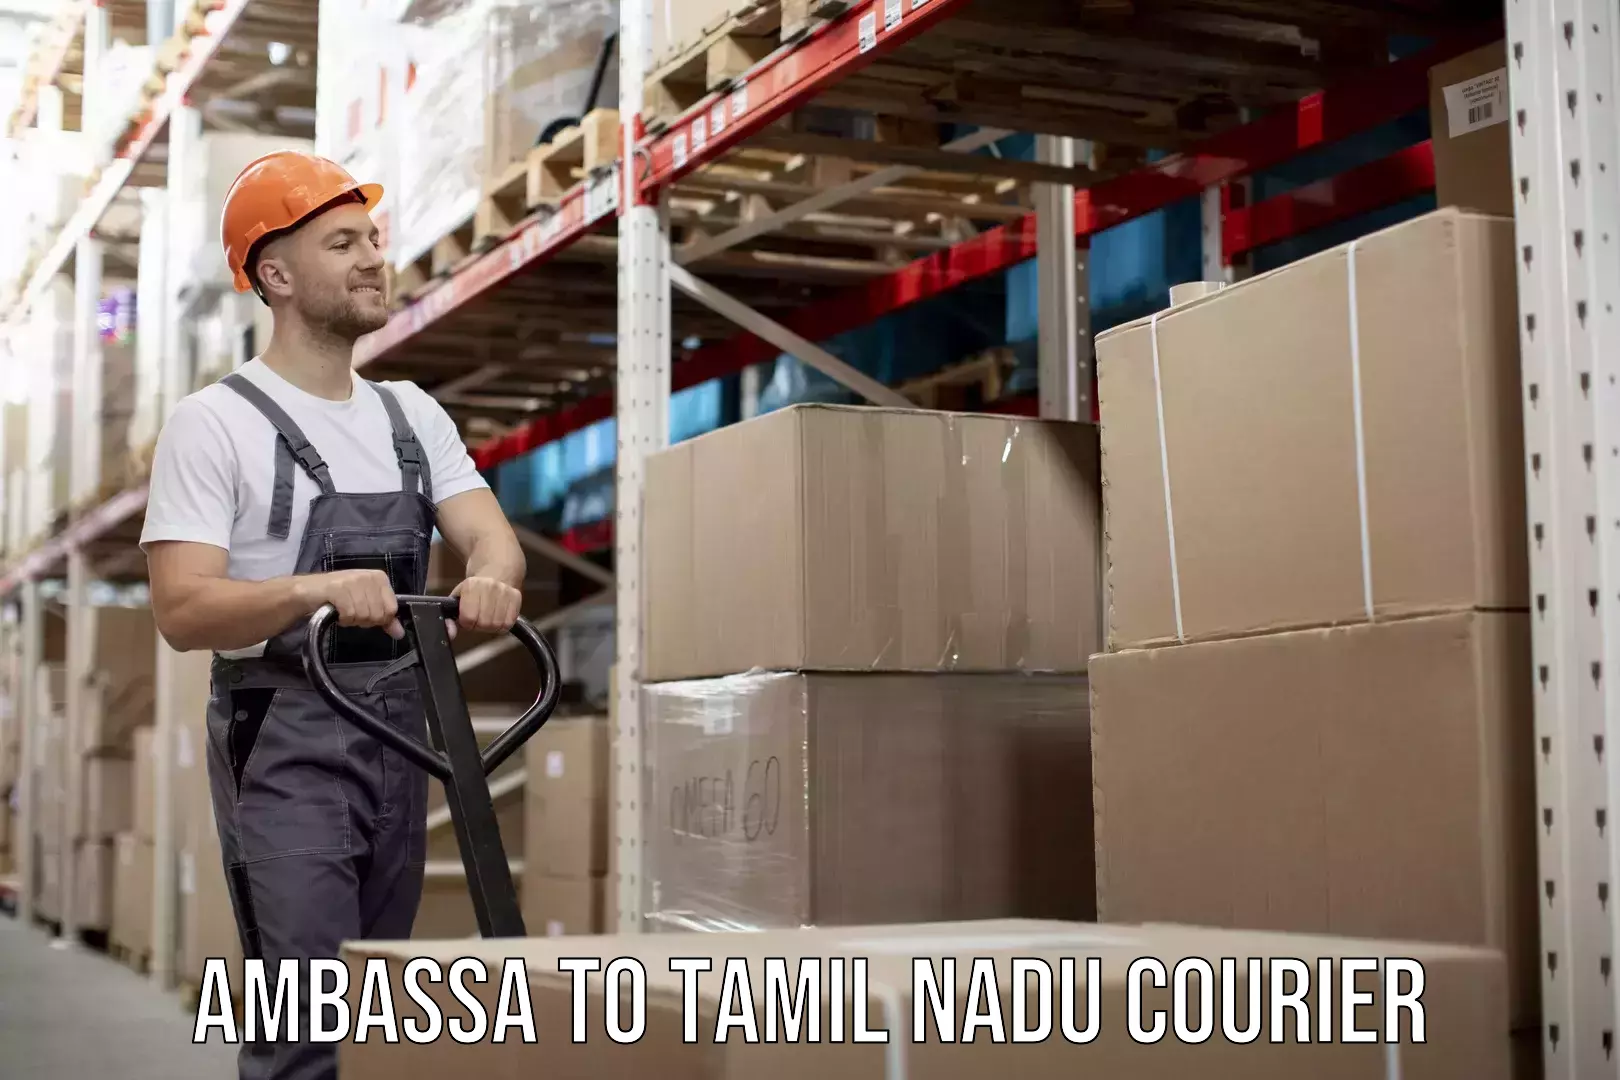 Customer-friendly courier services Ambassa to Tamil Nadu